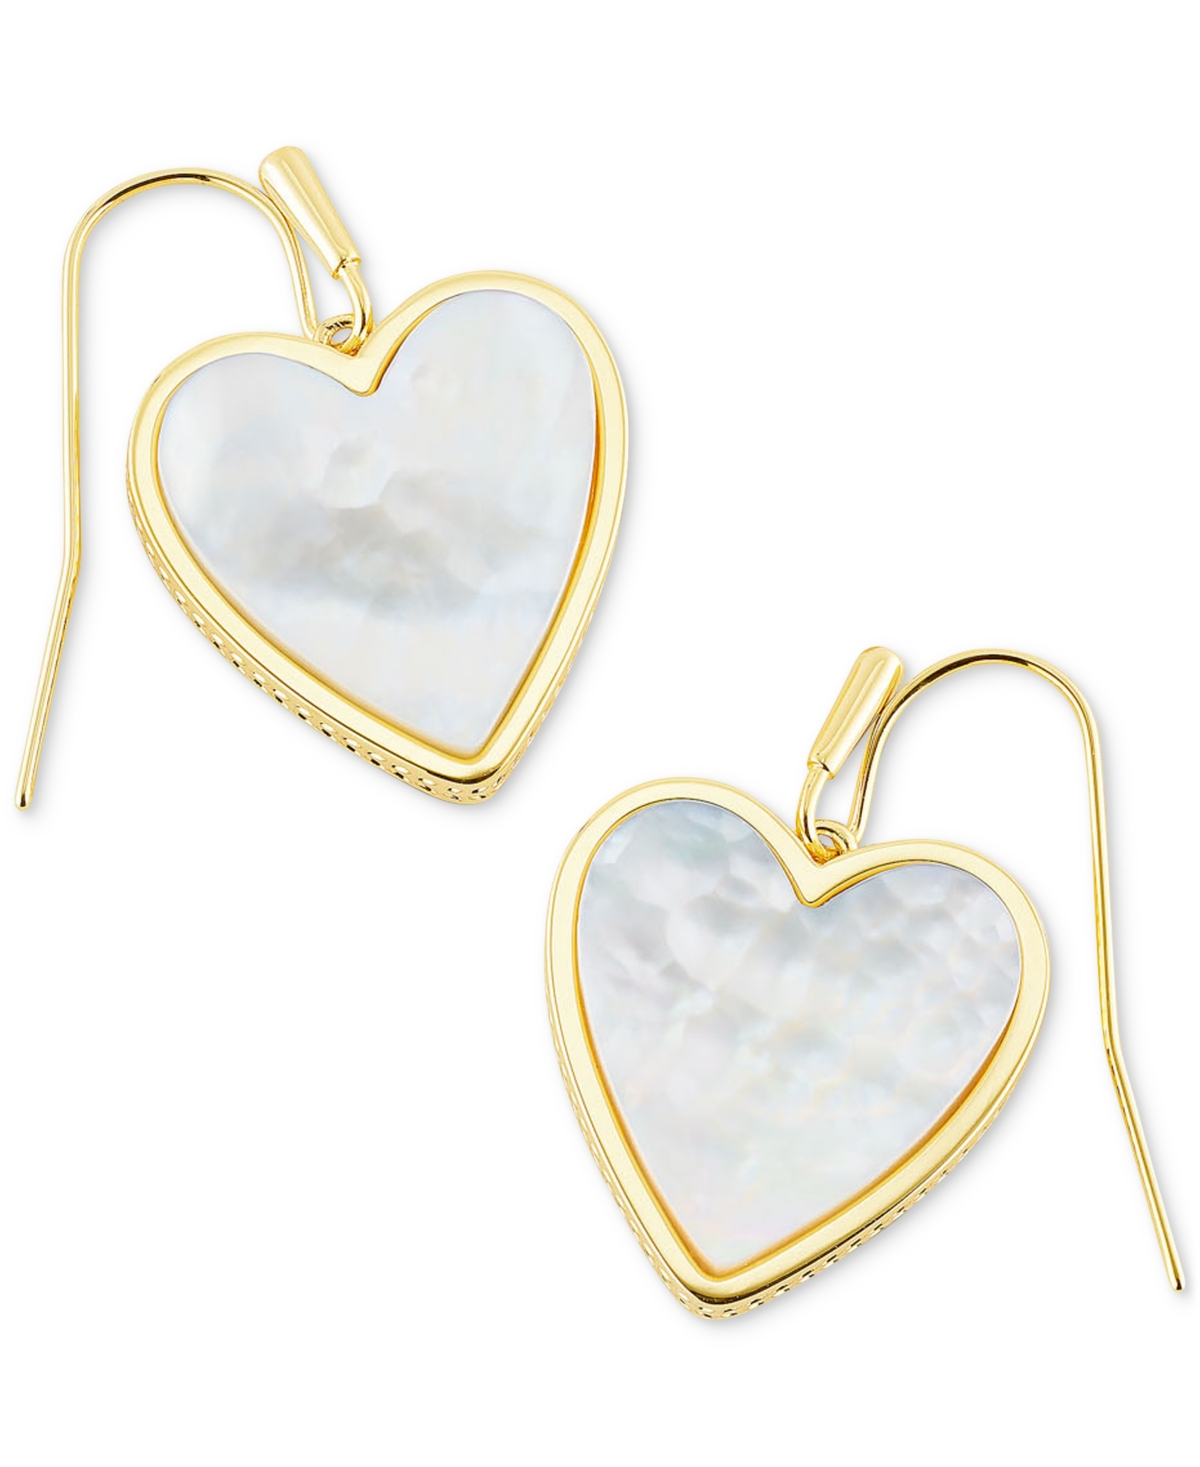 Kendra Scott Gold-Tone Heart Drop Earrings